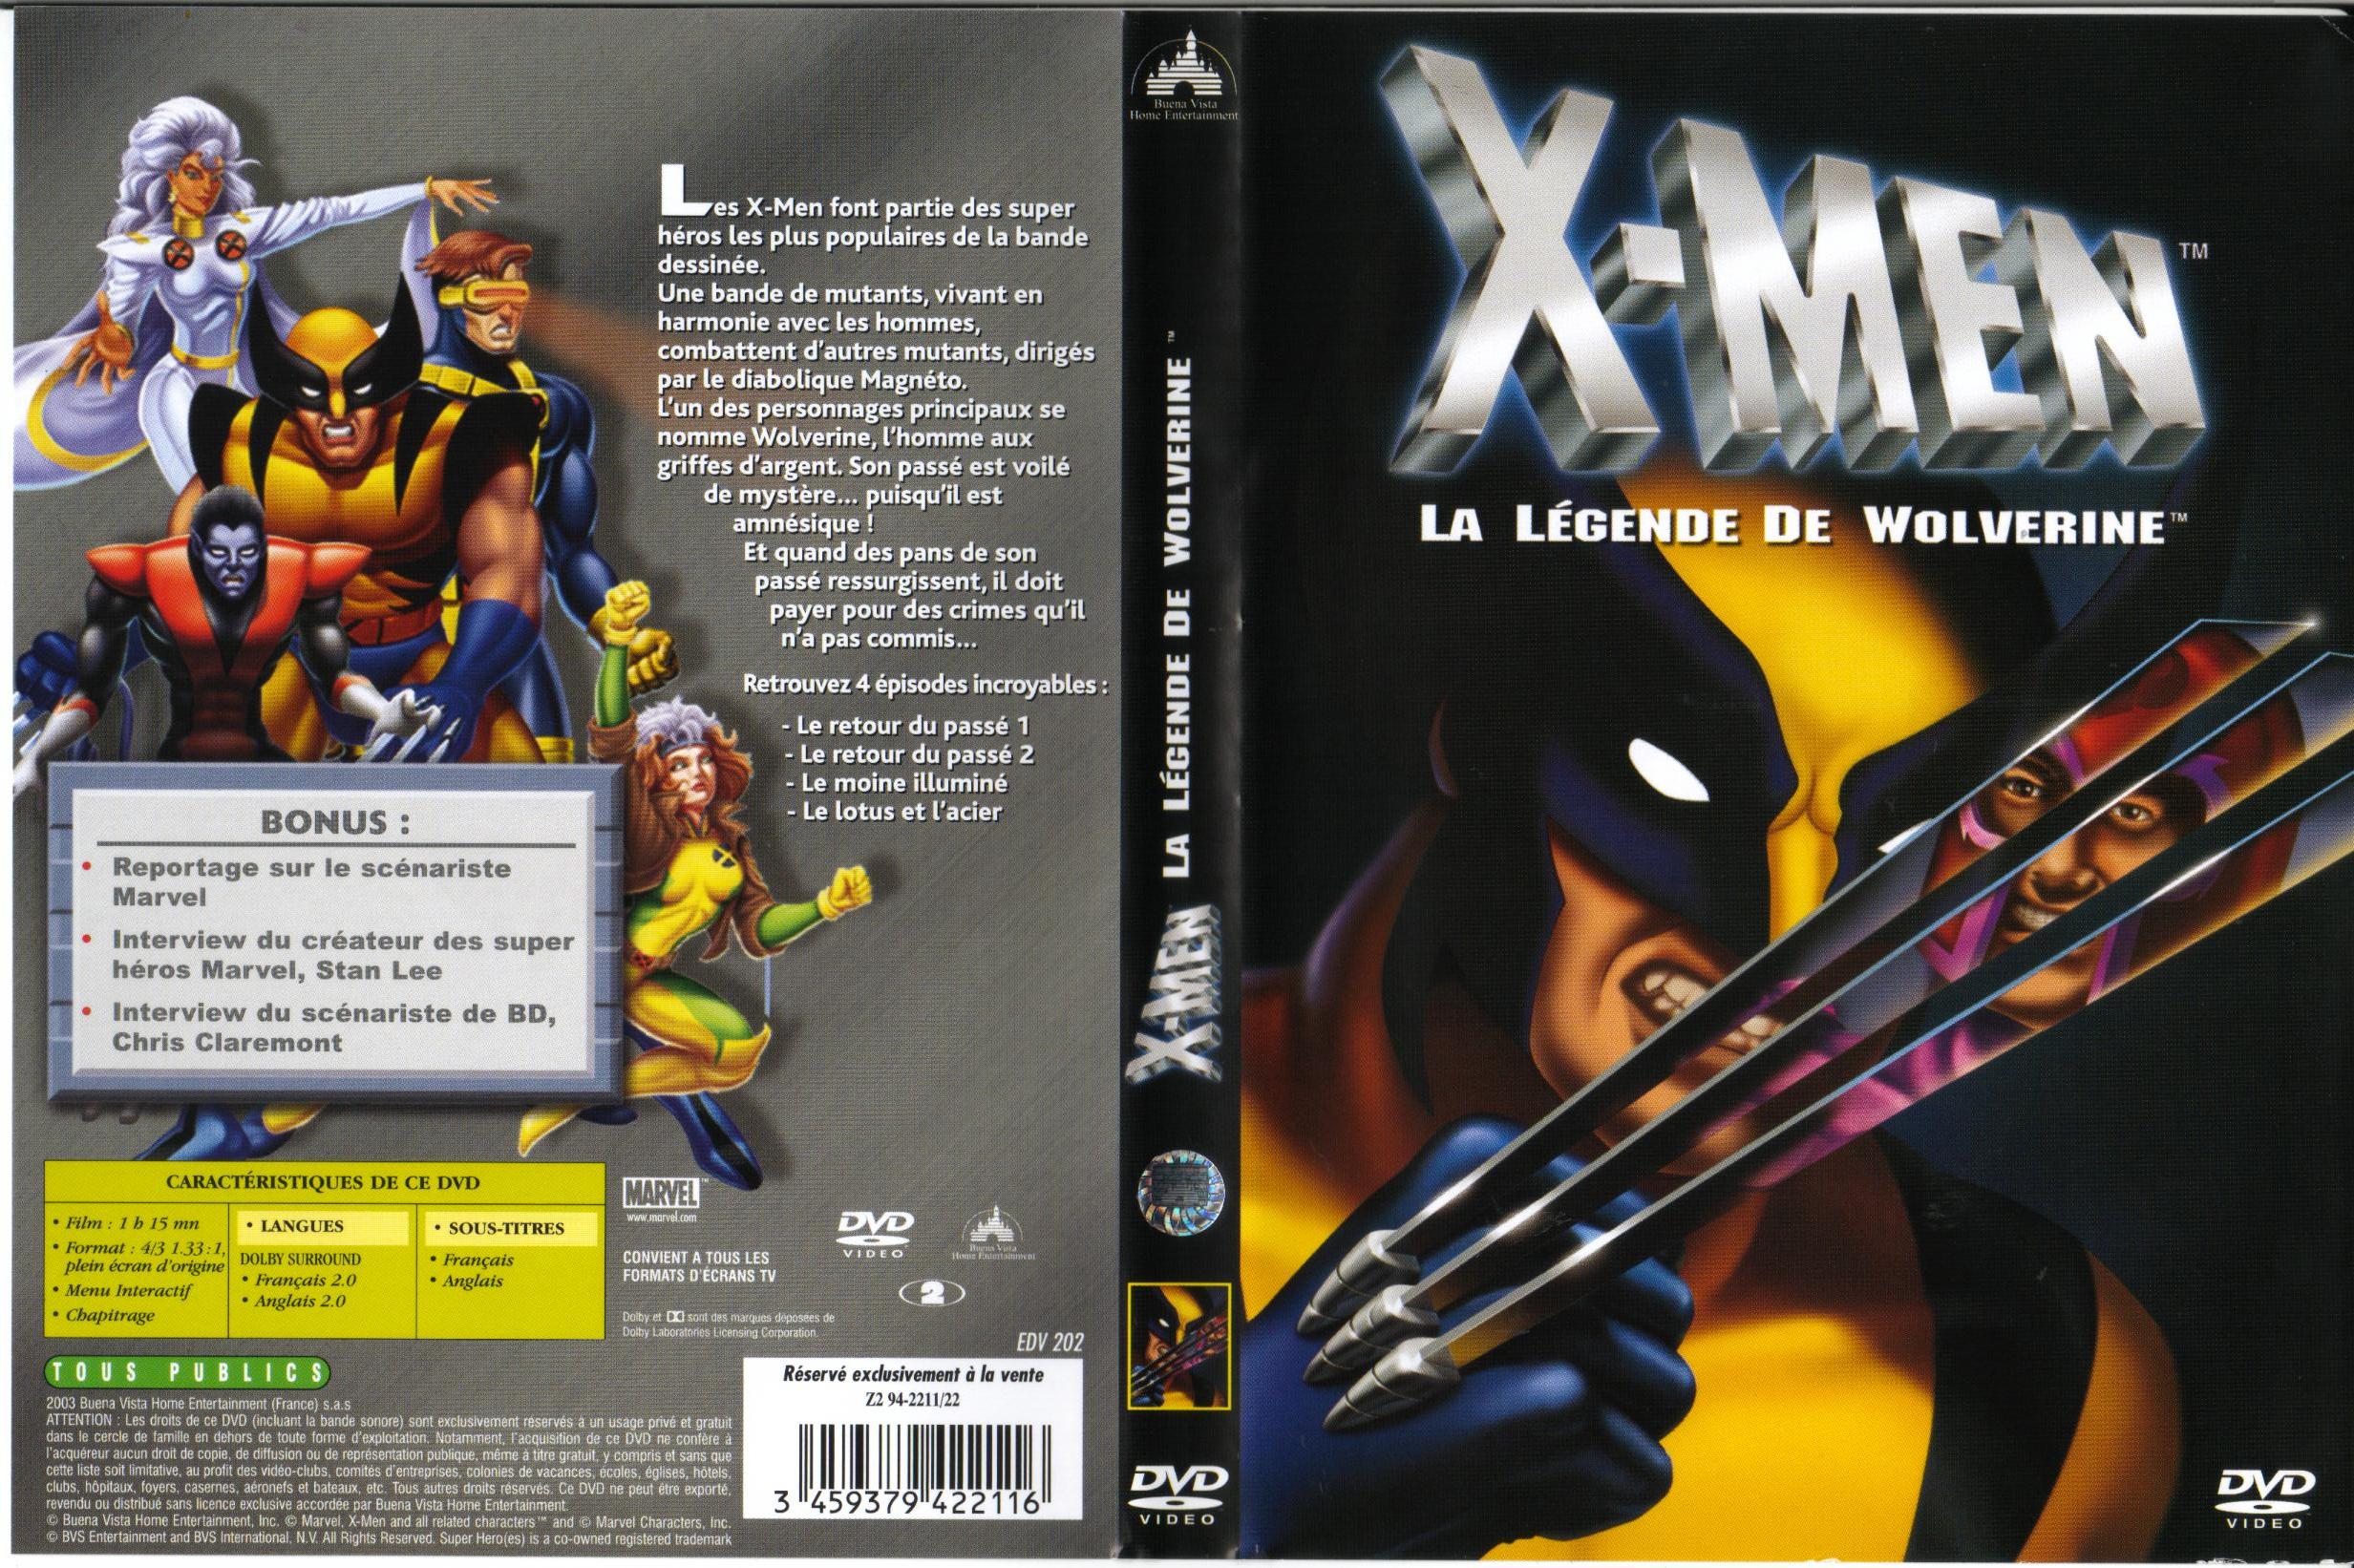 Jaquette DVD X-men la lgende de Wolverine (DA)